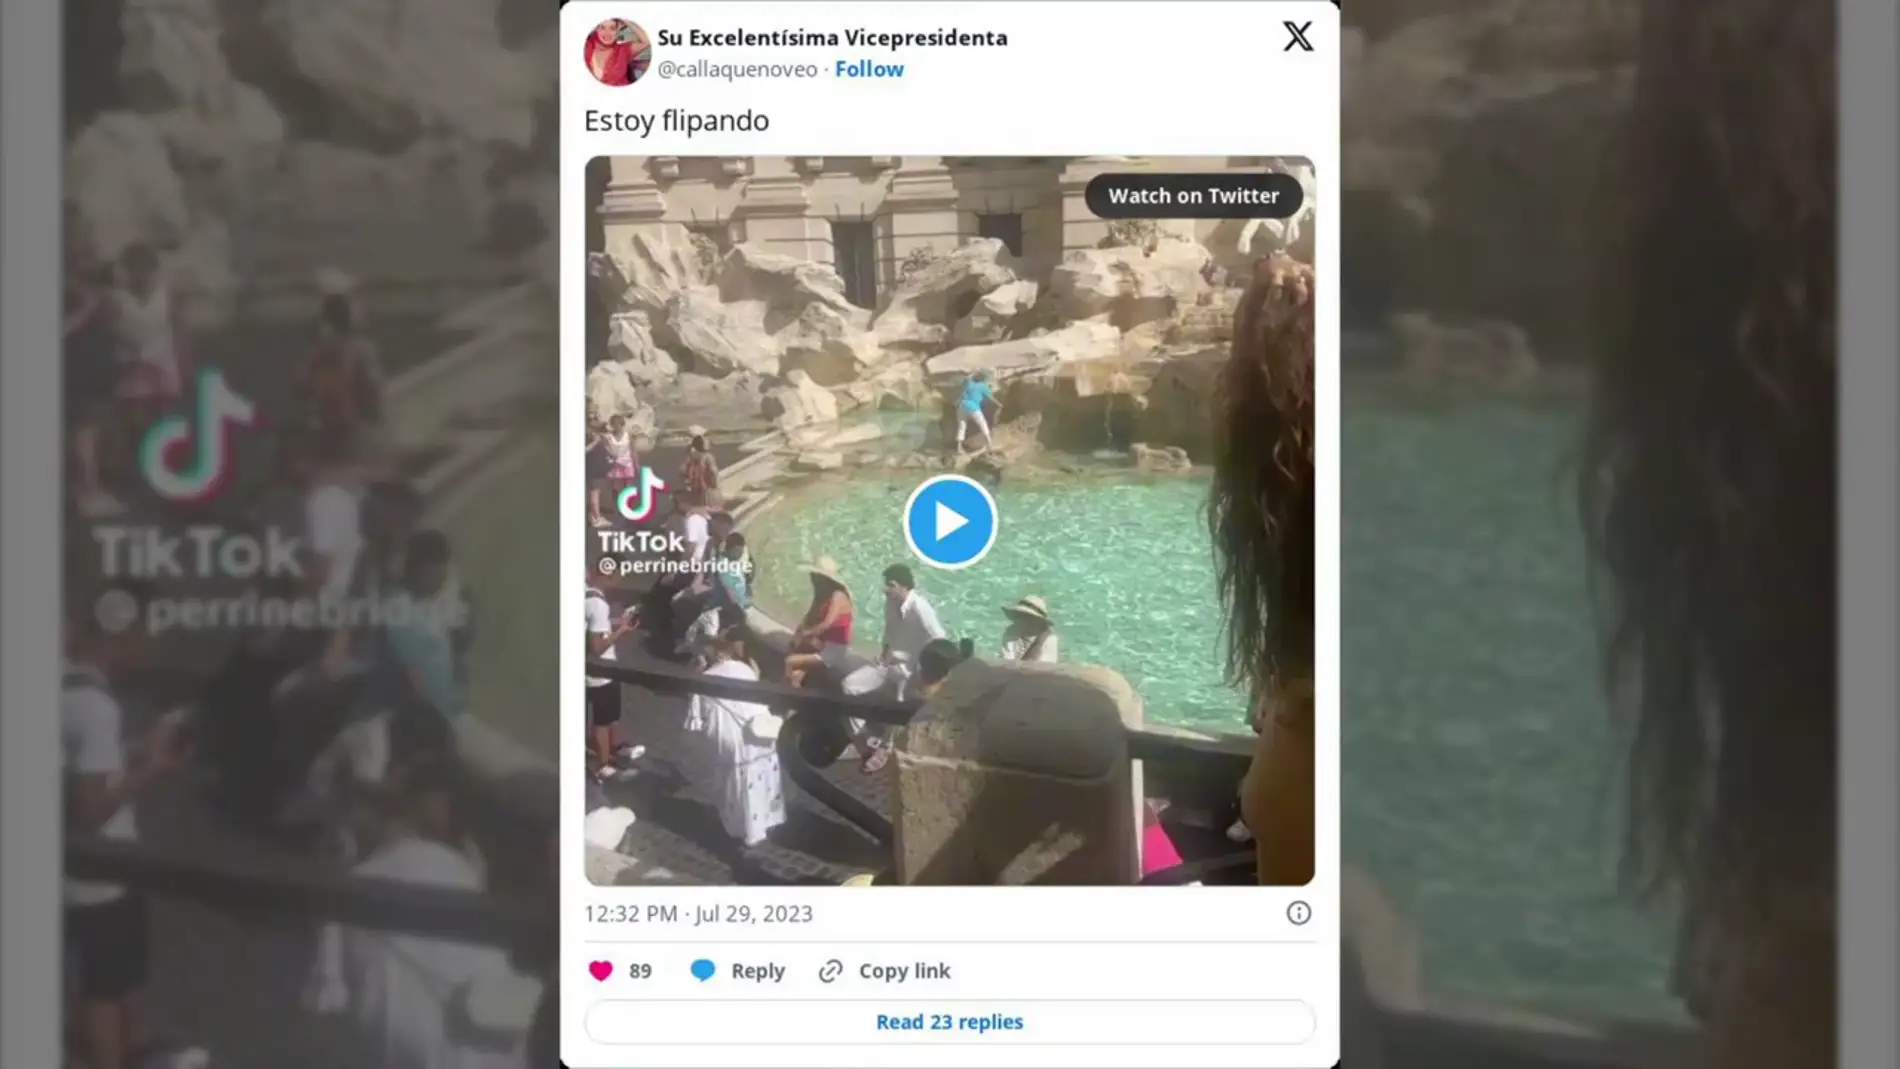 Una mujer escala la Fontana di Trevi de Roma para llenar una botella de agua: "Podría haberse hecho mucho daño"